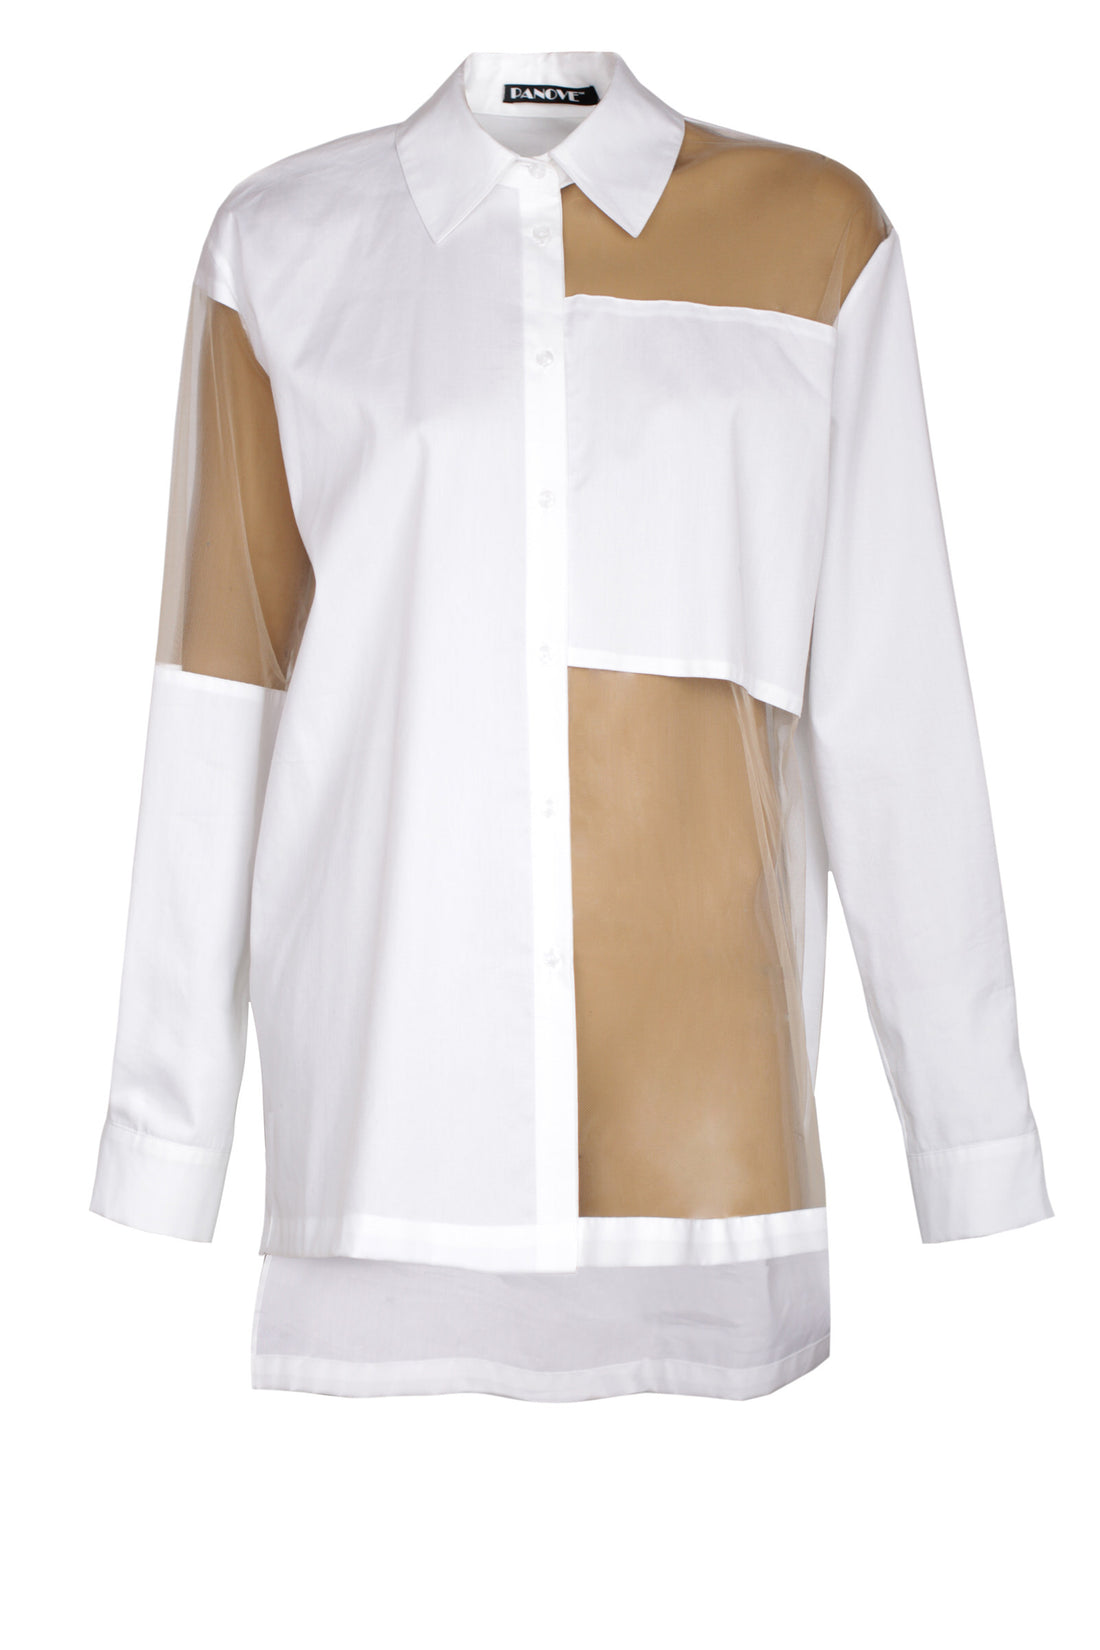 Shirt with three transparent details (PANOVE) U.PN00191В